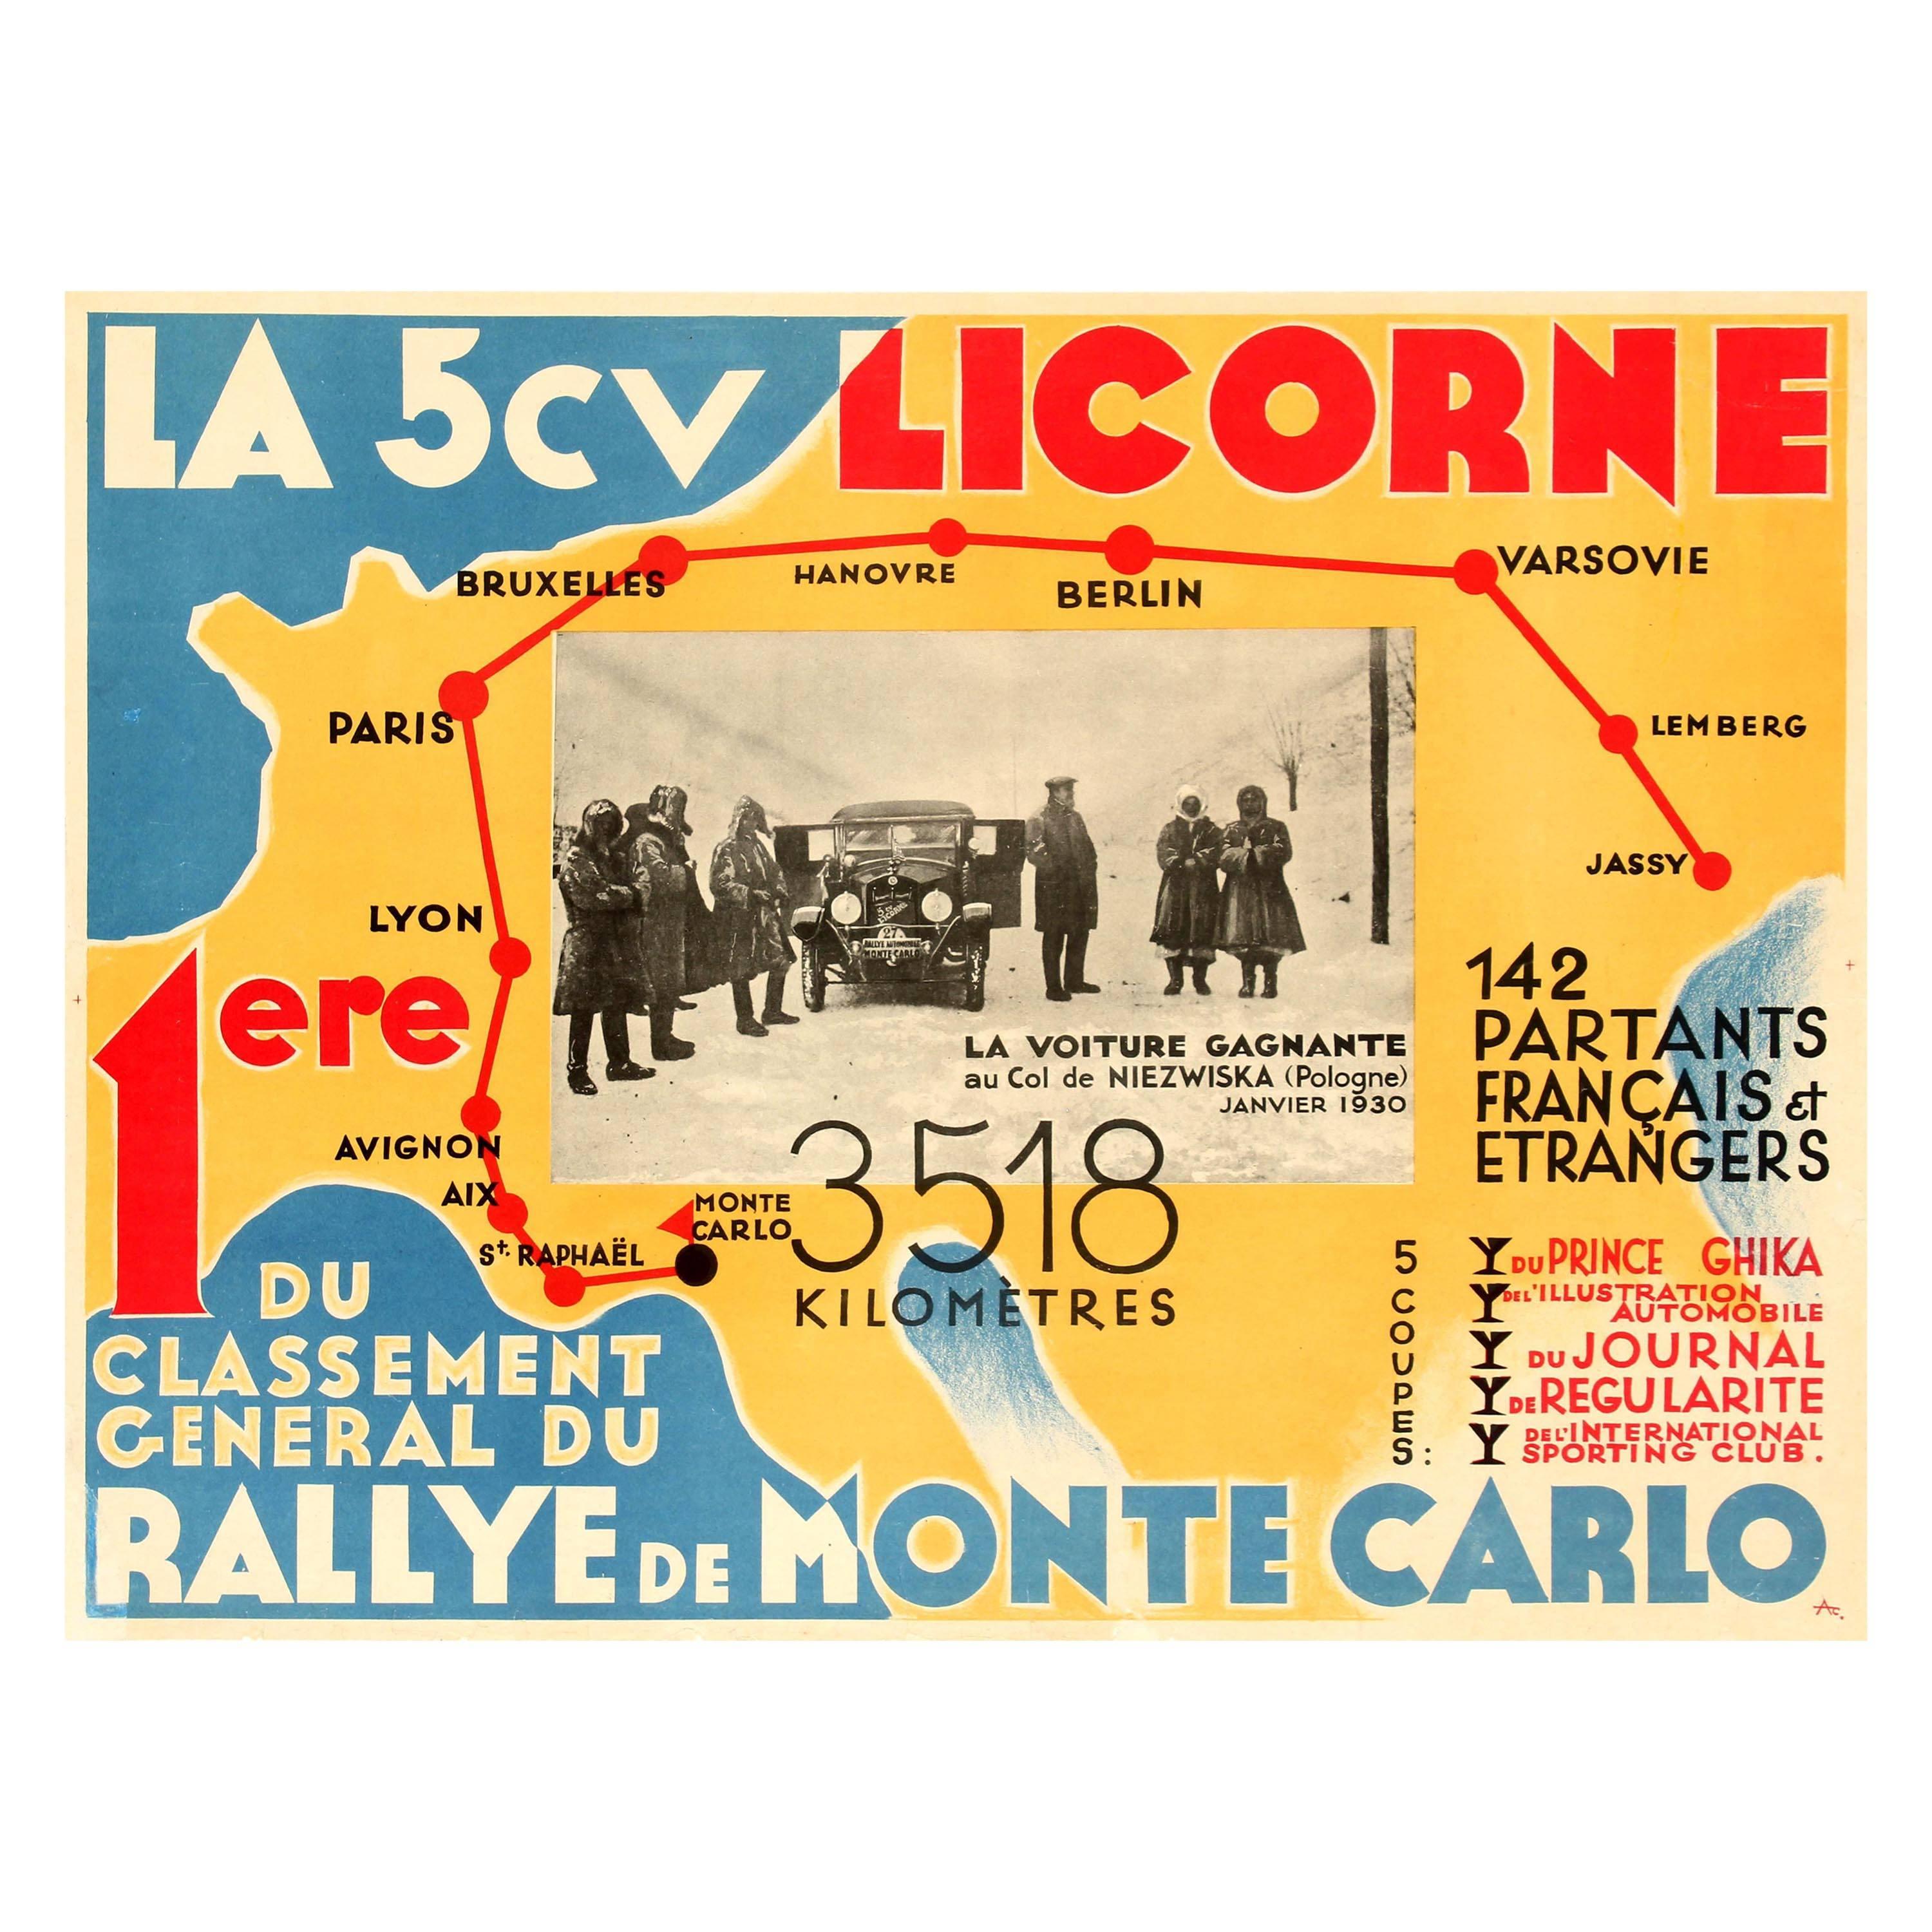 Original Vintage Car Racing Poster - La 5cv Licorne Rallye De Monte Carlo Rally